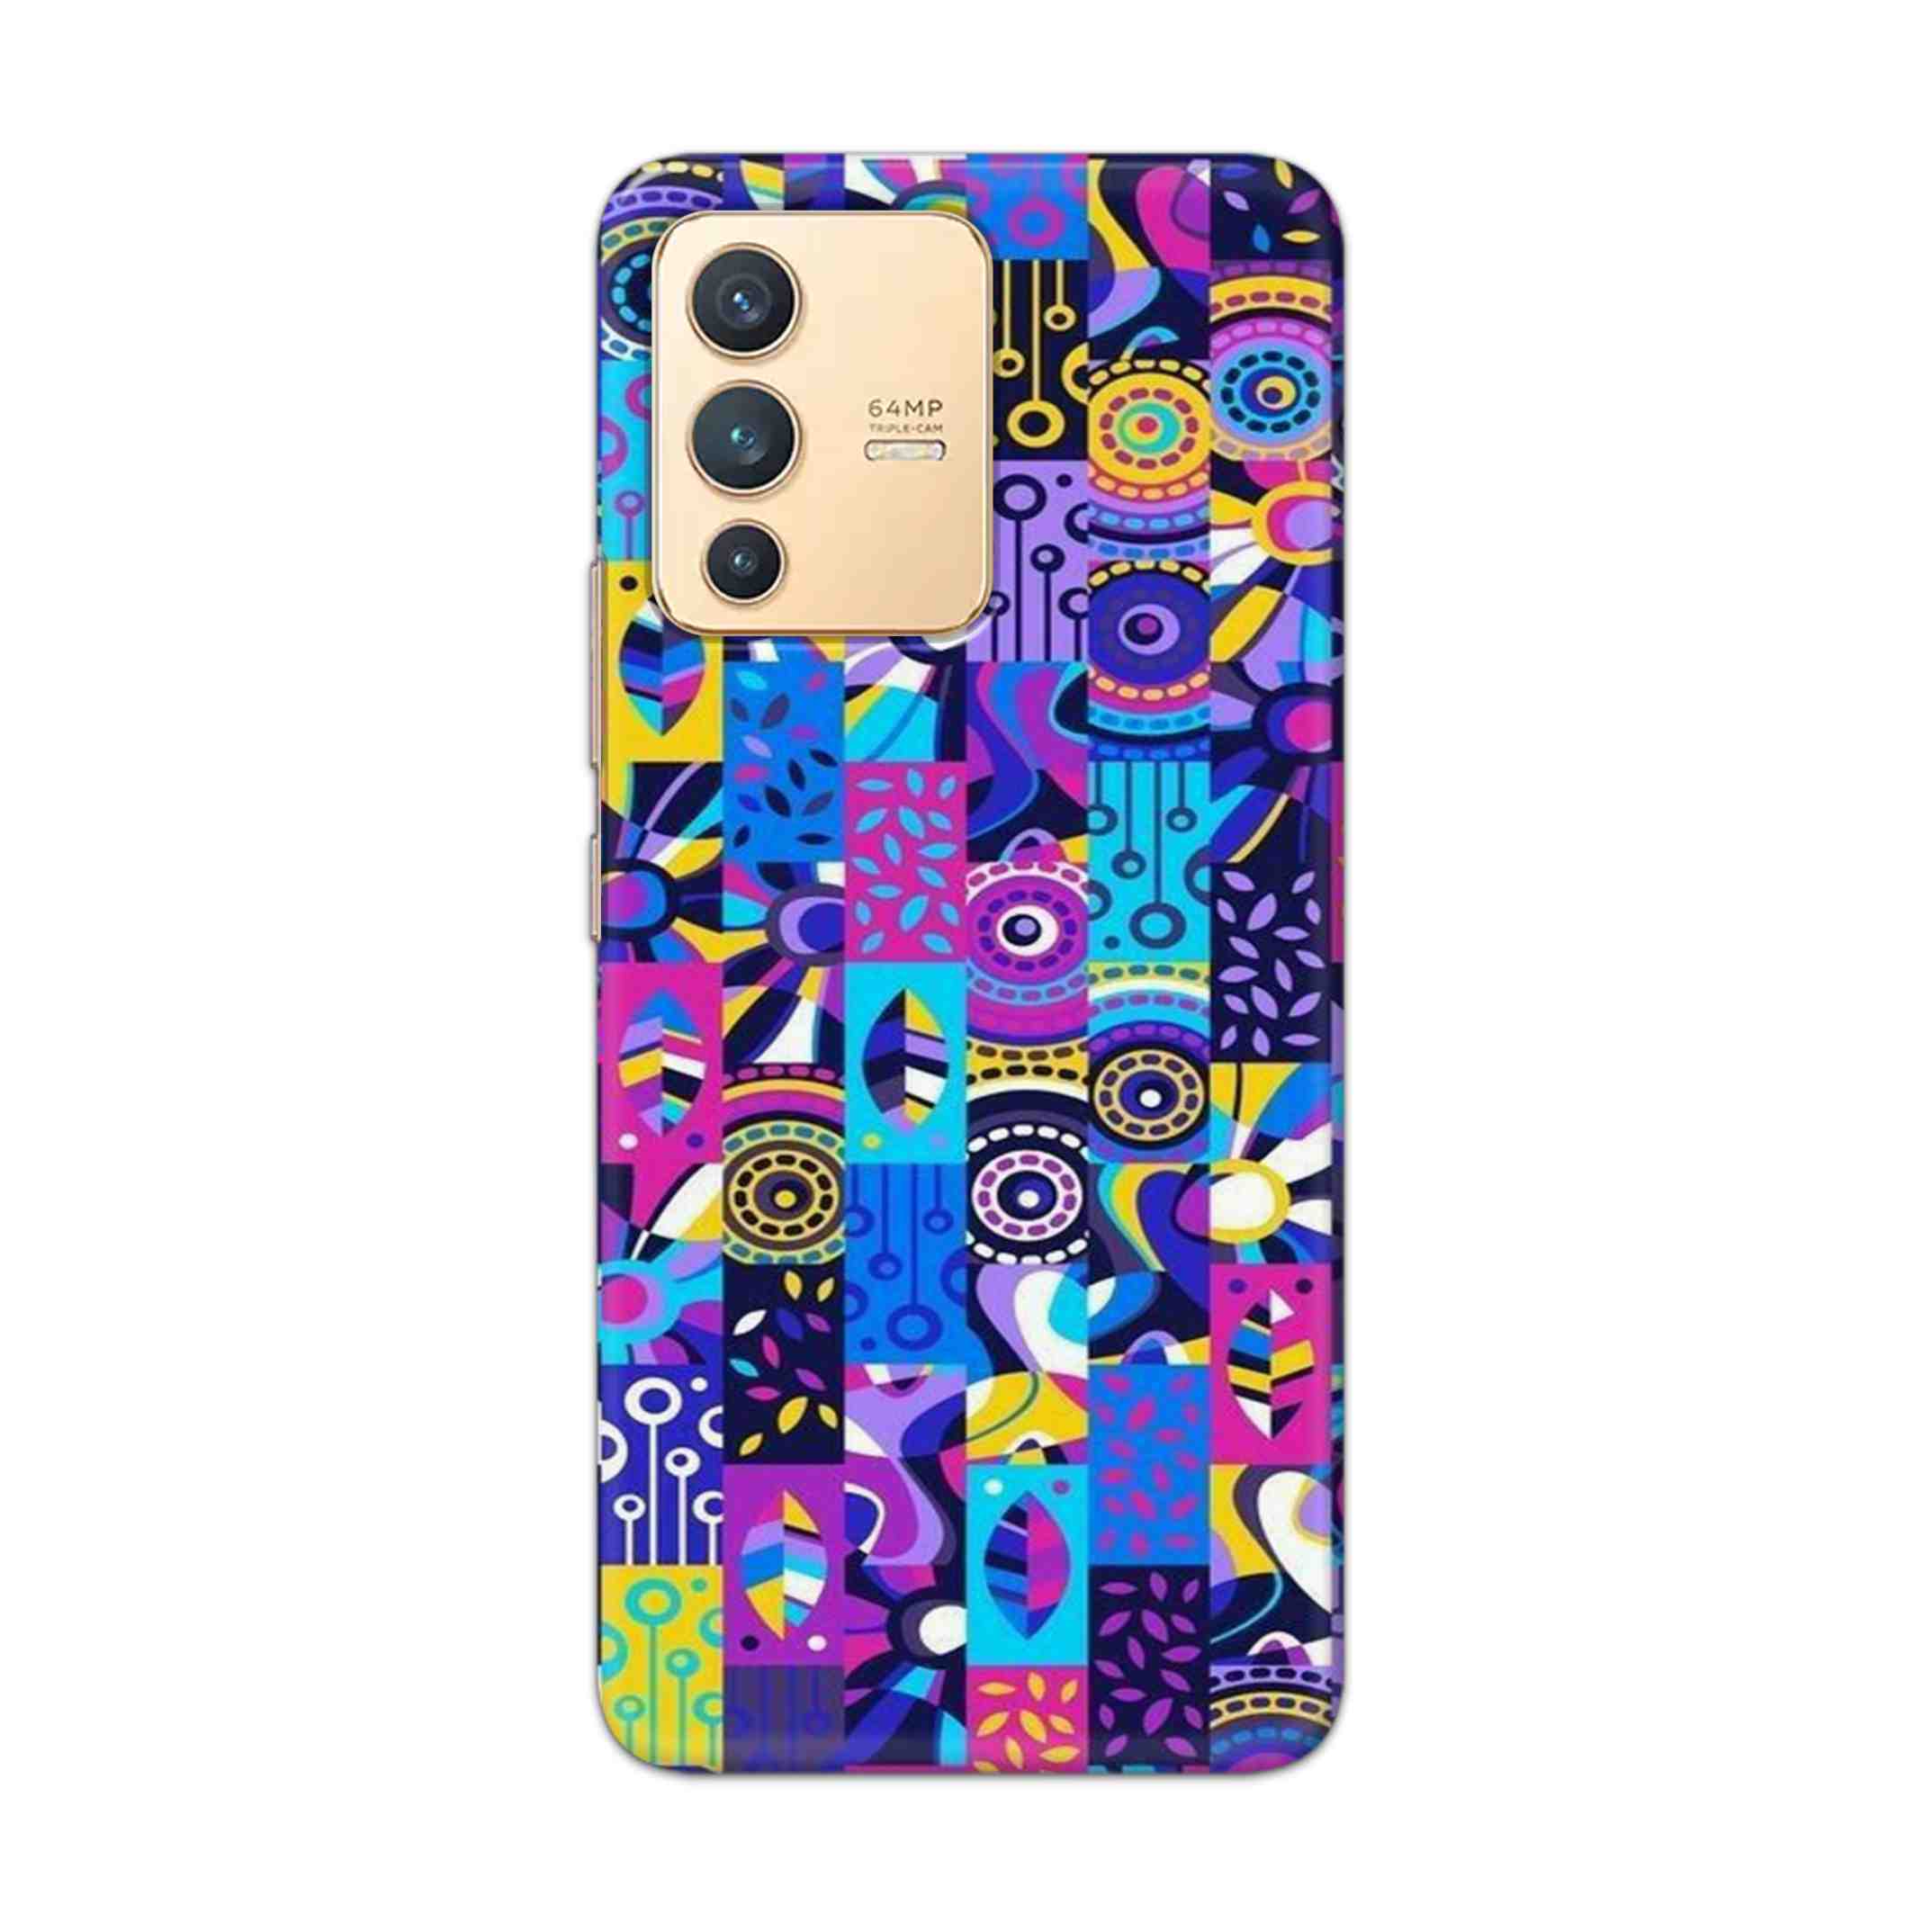 Buy Rainbow Art Hard Back Mobile Phone Case Cover For Vivo V23 Online